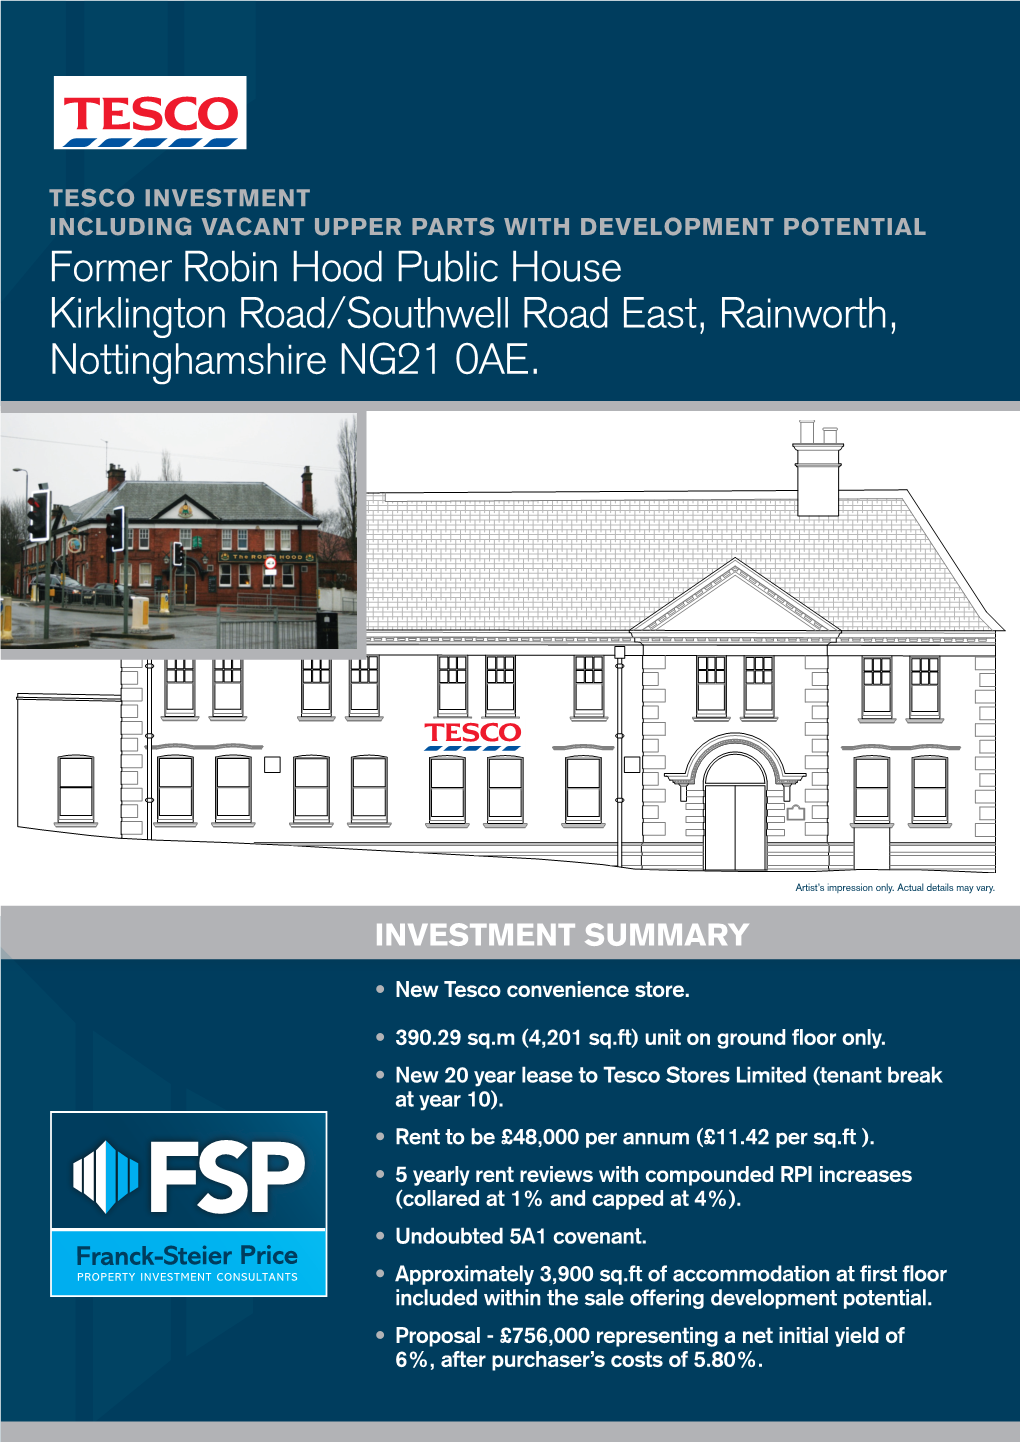 Former Robin Hood Public House Kirklington Road/Southwell Road East, Rainworth, Nottinghamshire NG21 0AE